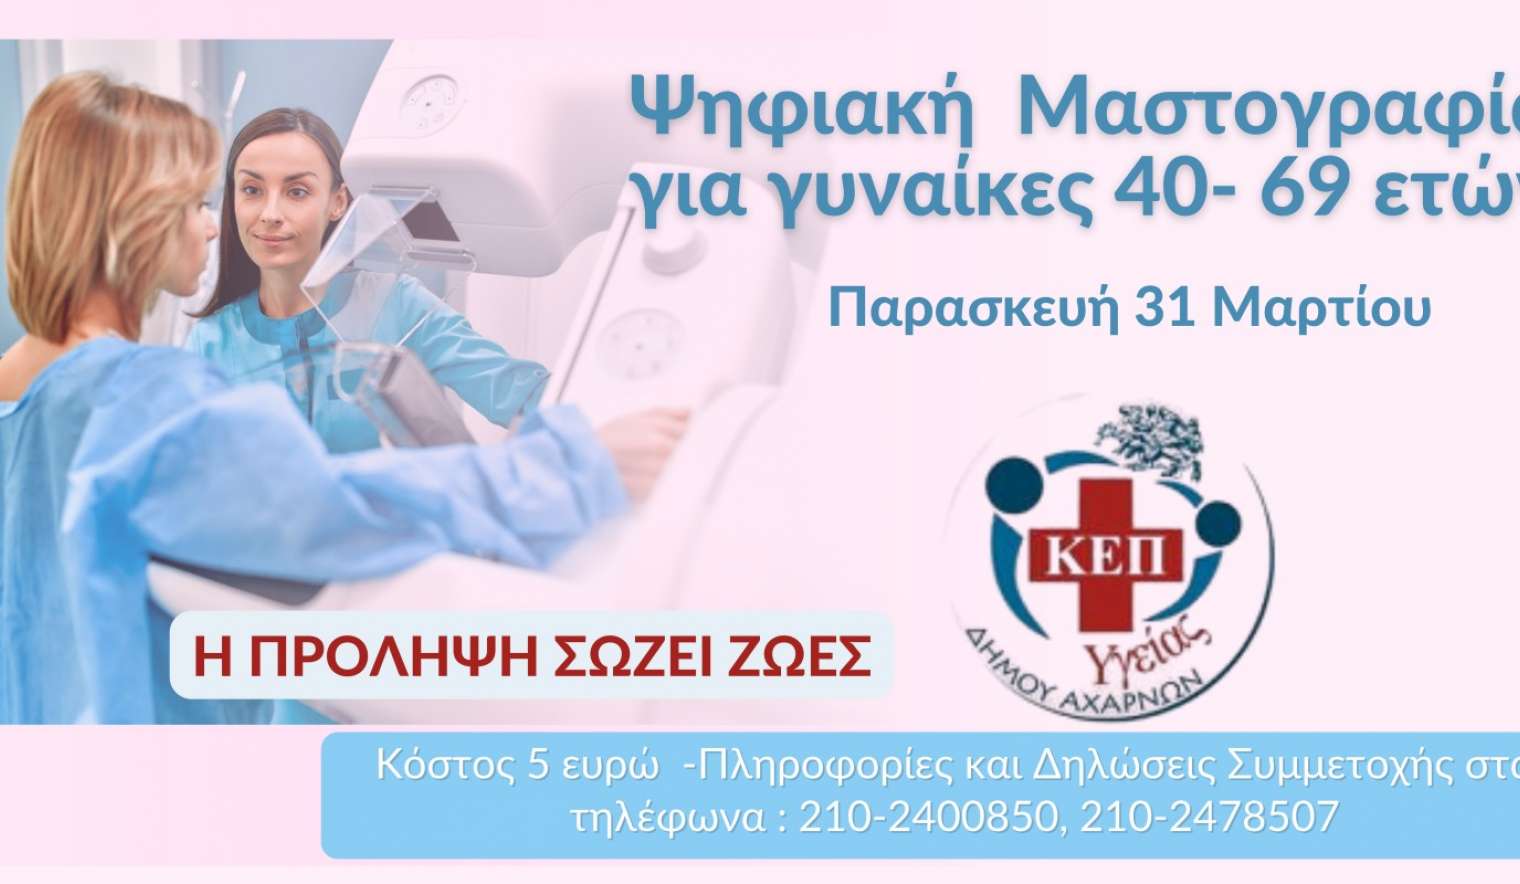 Ψηφιακή μαστογραφία από το ΚΕΠ Υγείας του Δήμου Αχαρνών και τη ΔΗΚΕΑ